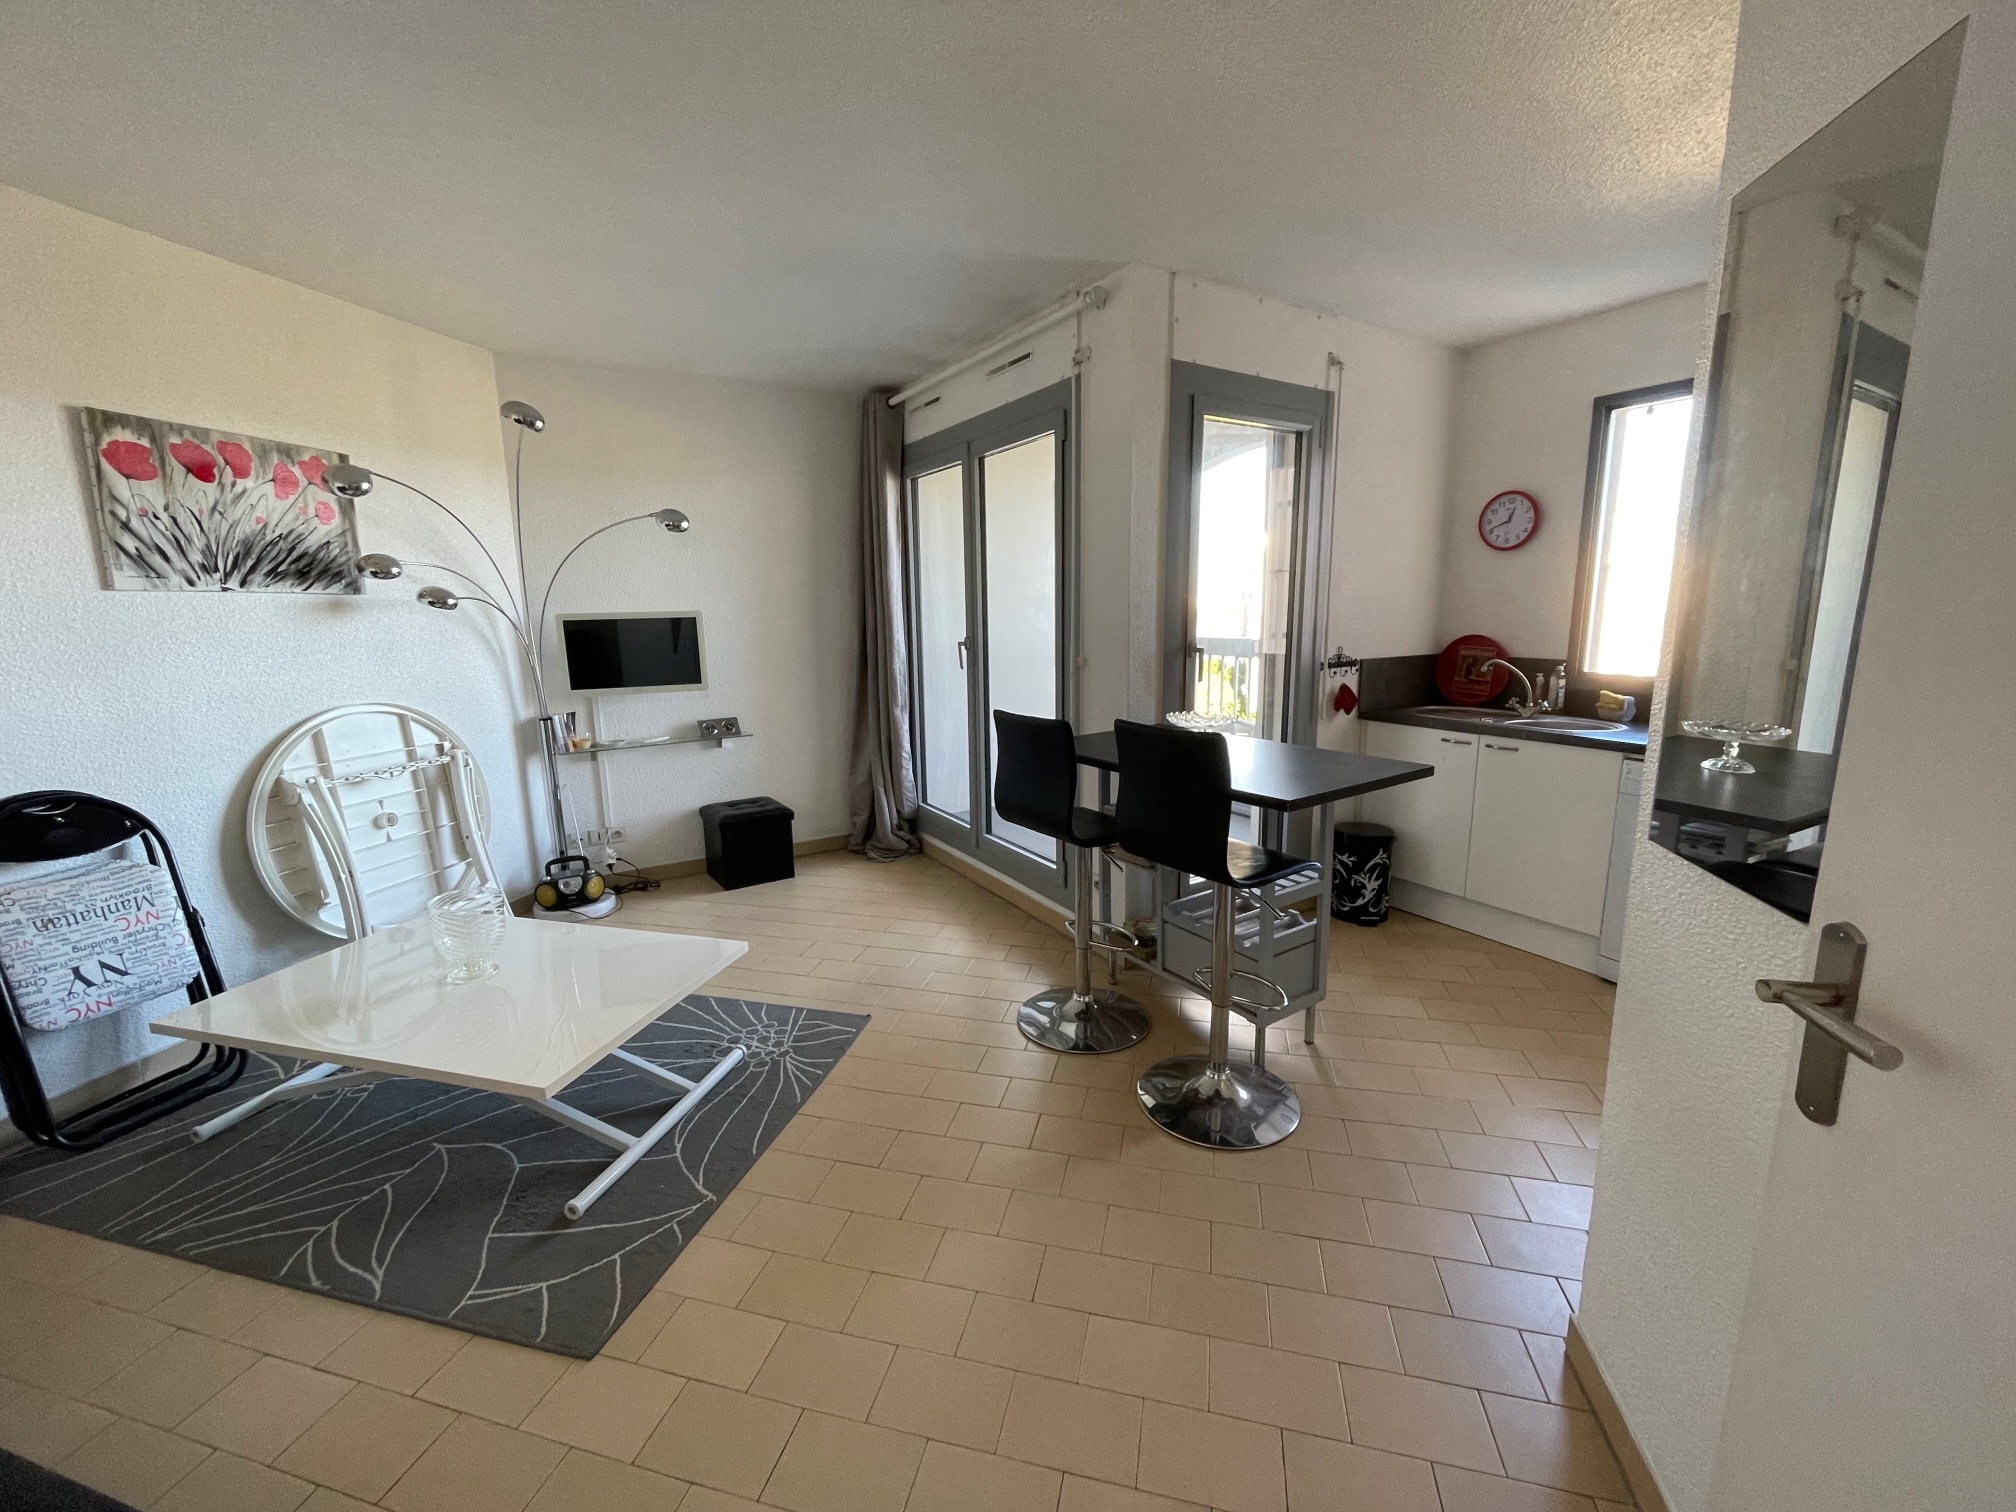 À vendre appartement de 35m2 à st cyprien plage (66750) - Photo 9'